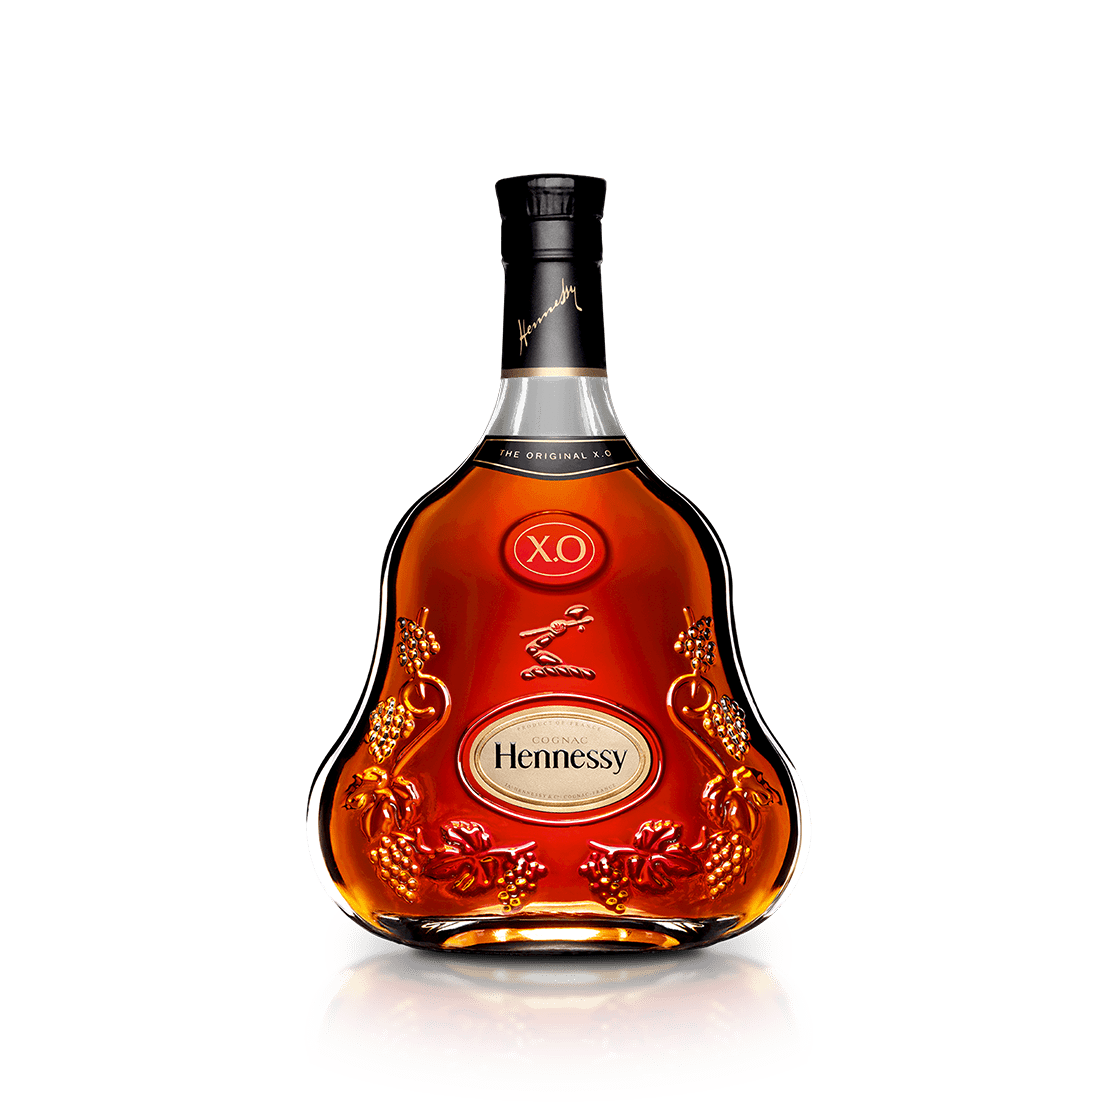 Hennessy là thương hiệu rượu nổi tiếng hơn 200 năm của nước Pháp được nhiều người yêu thích